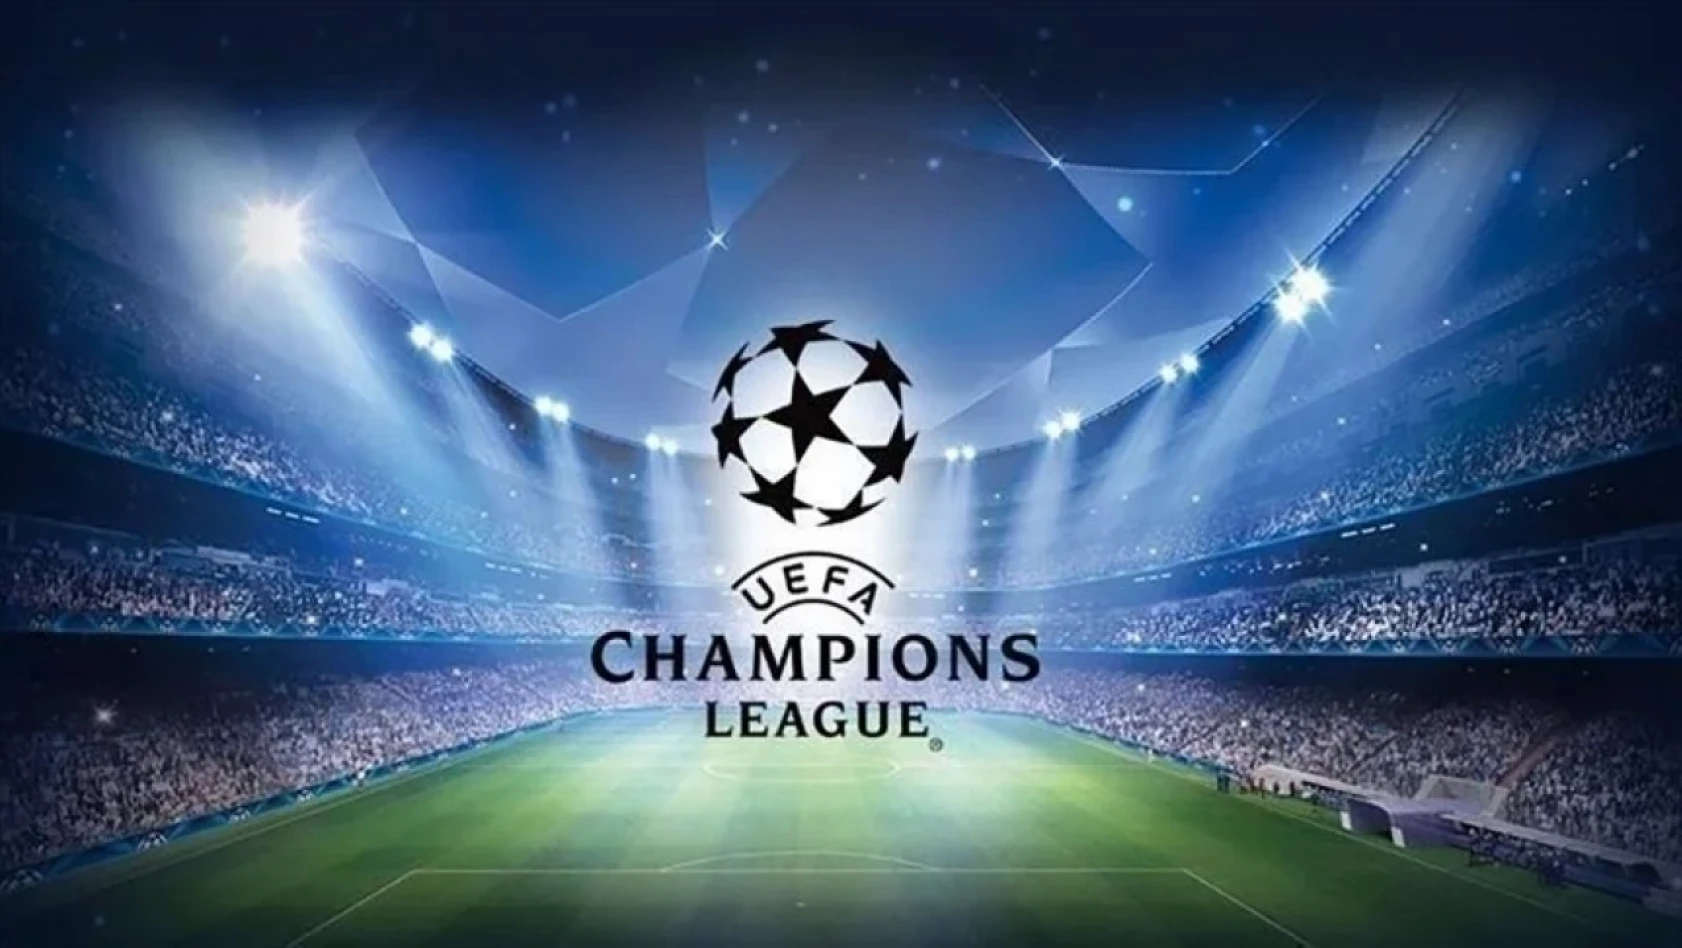 UEFA Şampiyonlar Ligi'nde yarı final heyecanı